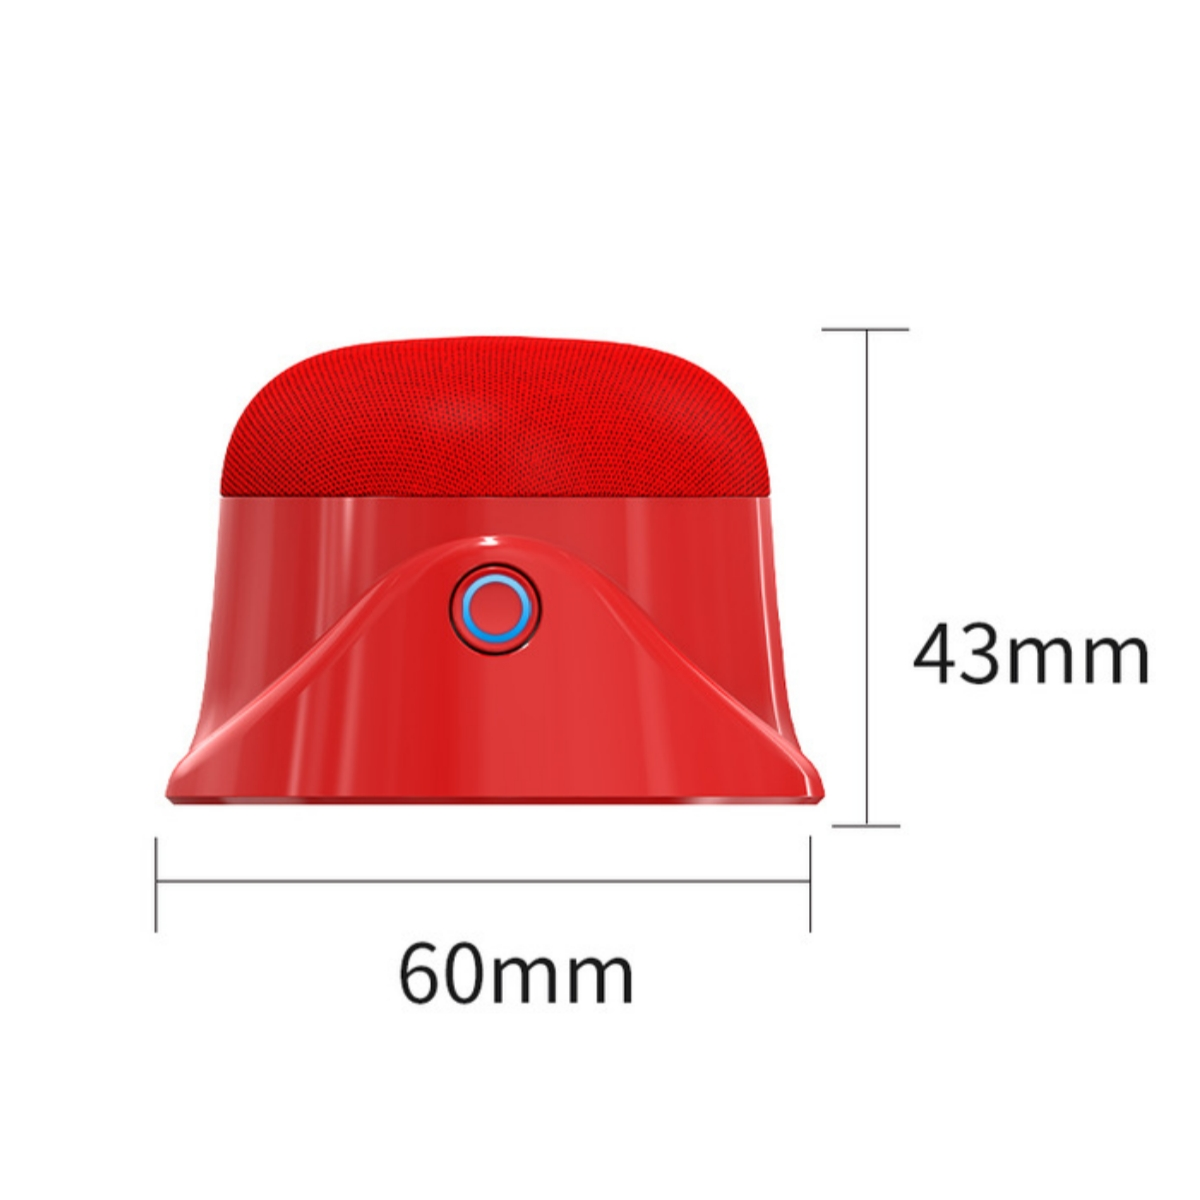 SHAOKE Saftbecher USB Bluetooth Mini Rot Lautsprecher, wiederaufladbar Reise-Saftbecher elektrisch tragbarer